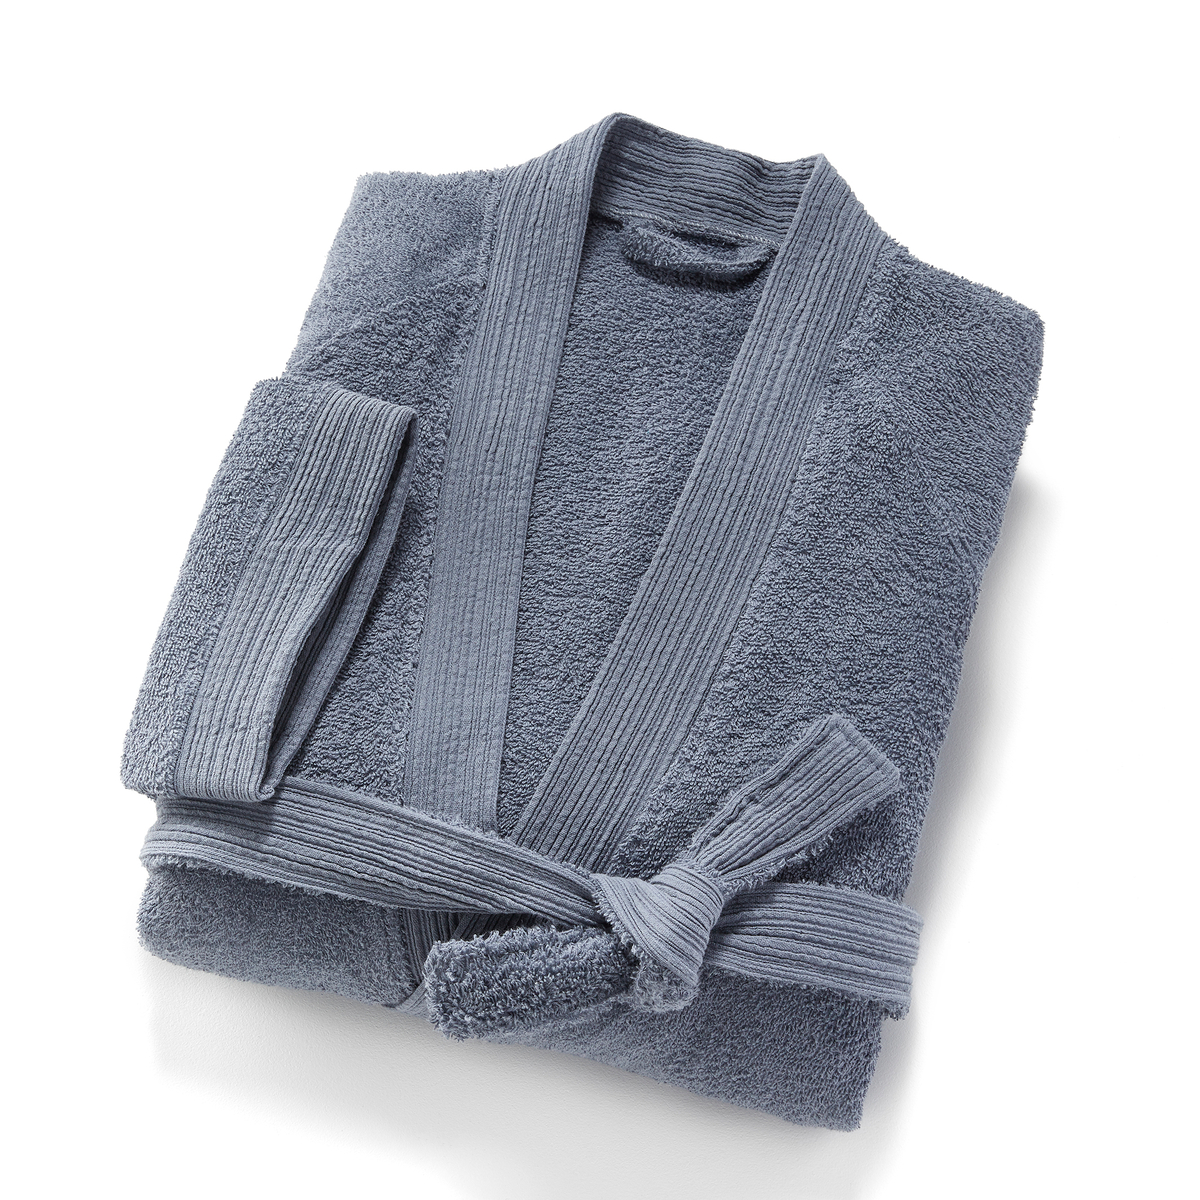 Product photograph of Scenario Kimono Bathrobe In Organic Cotton from La Redoute UK